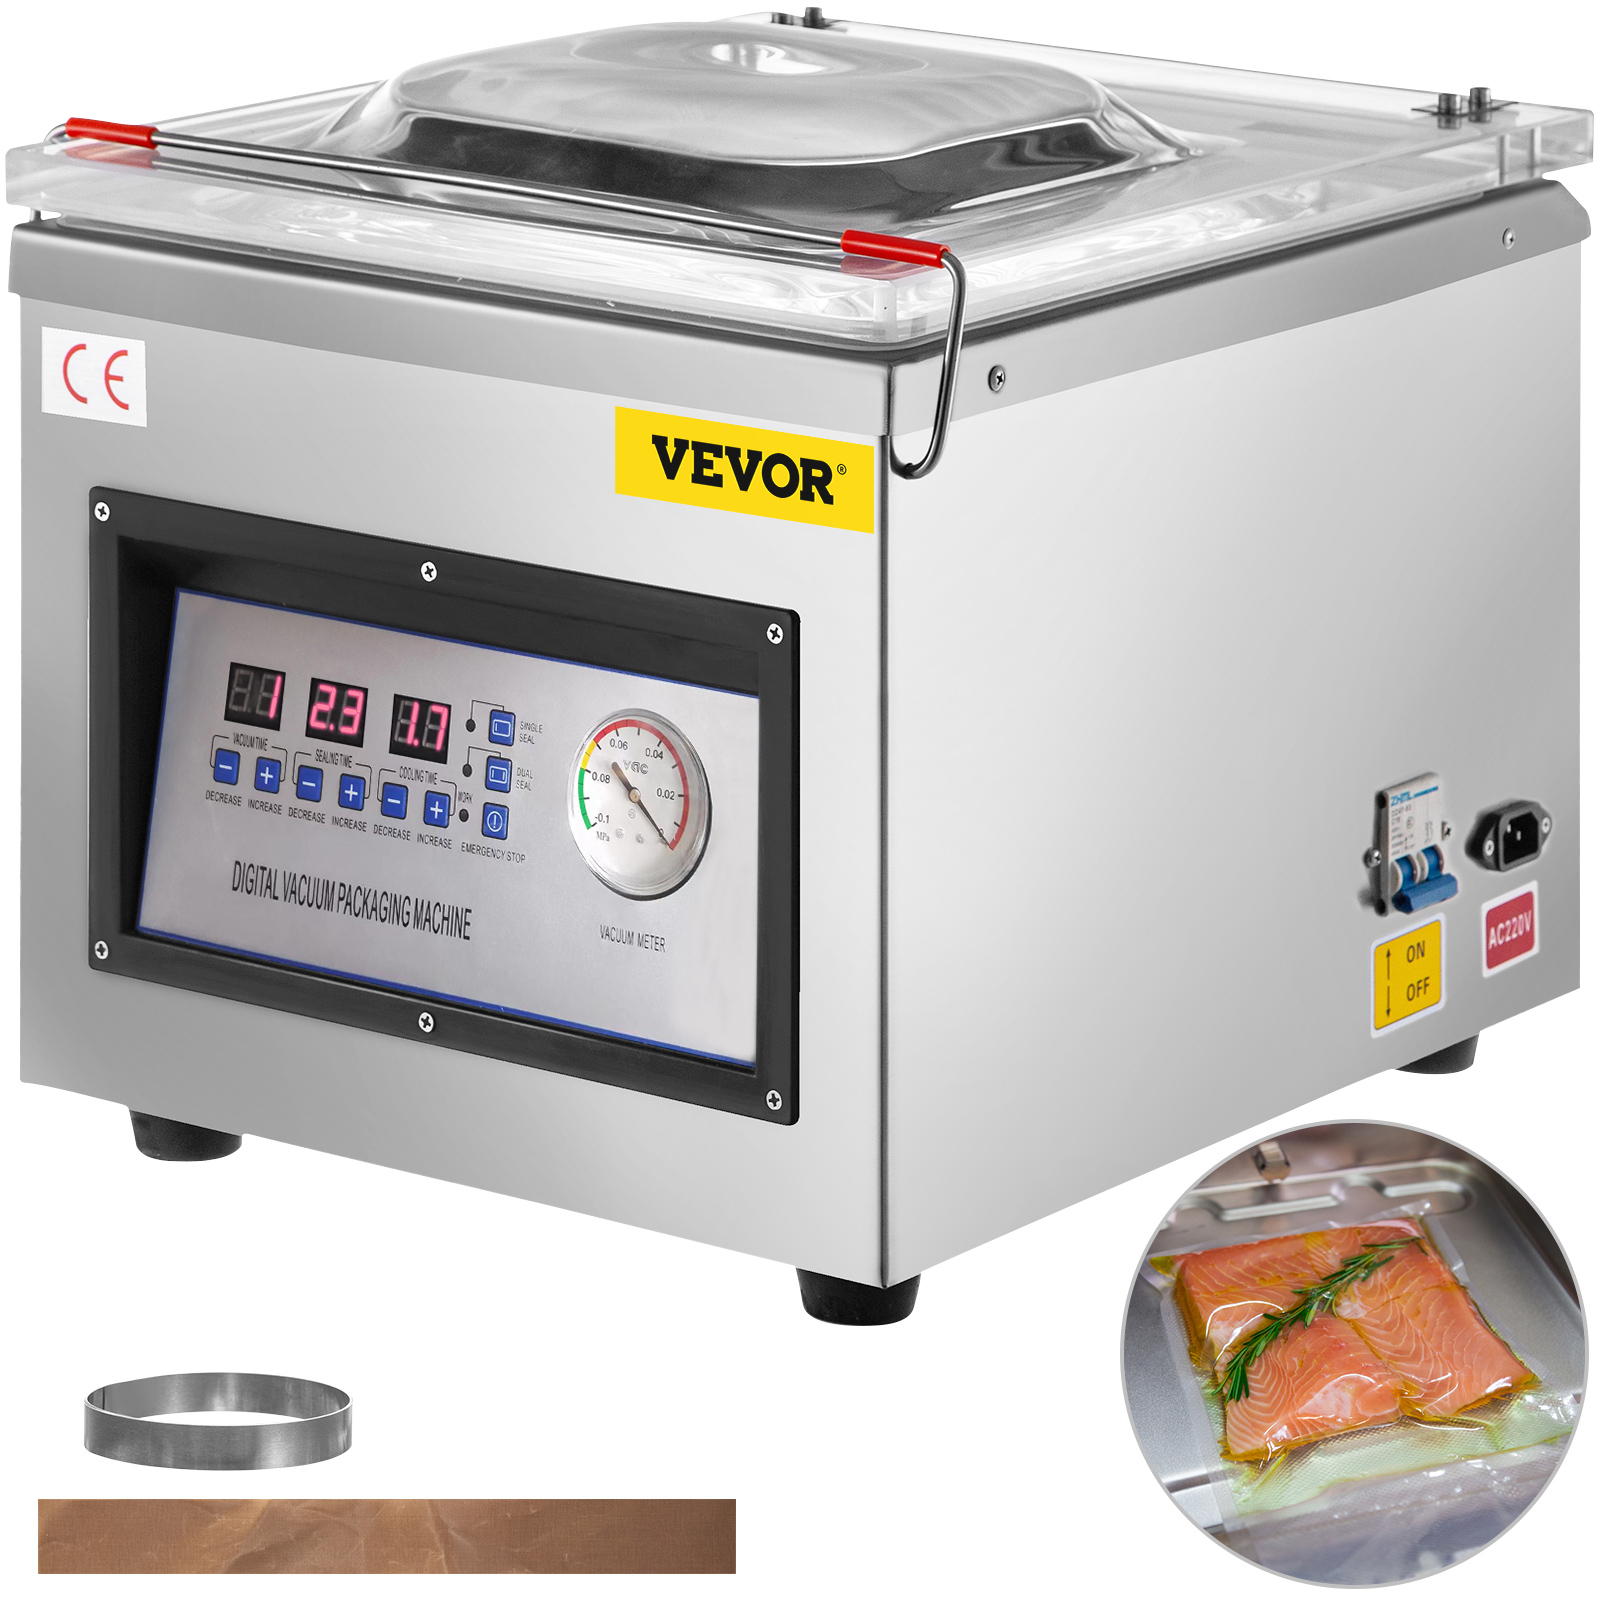 Vacuum-Sealer-Machine - Food Vacuum Sealer for Food Saver